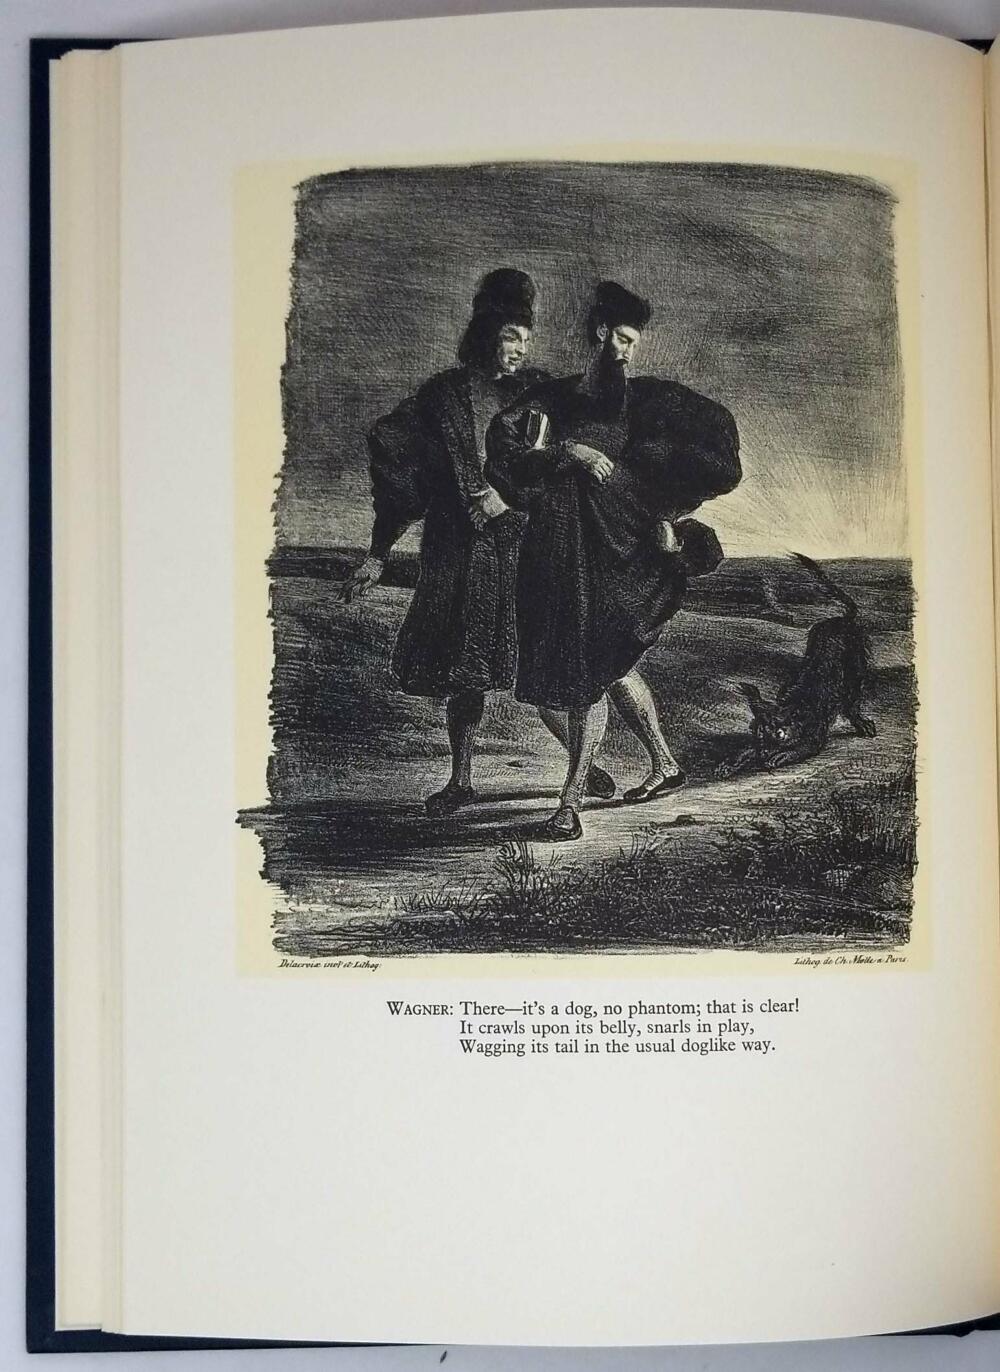 Faust - Johann Goethe 1958 (Illus. Eugene Delacroix) | Heritage Press